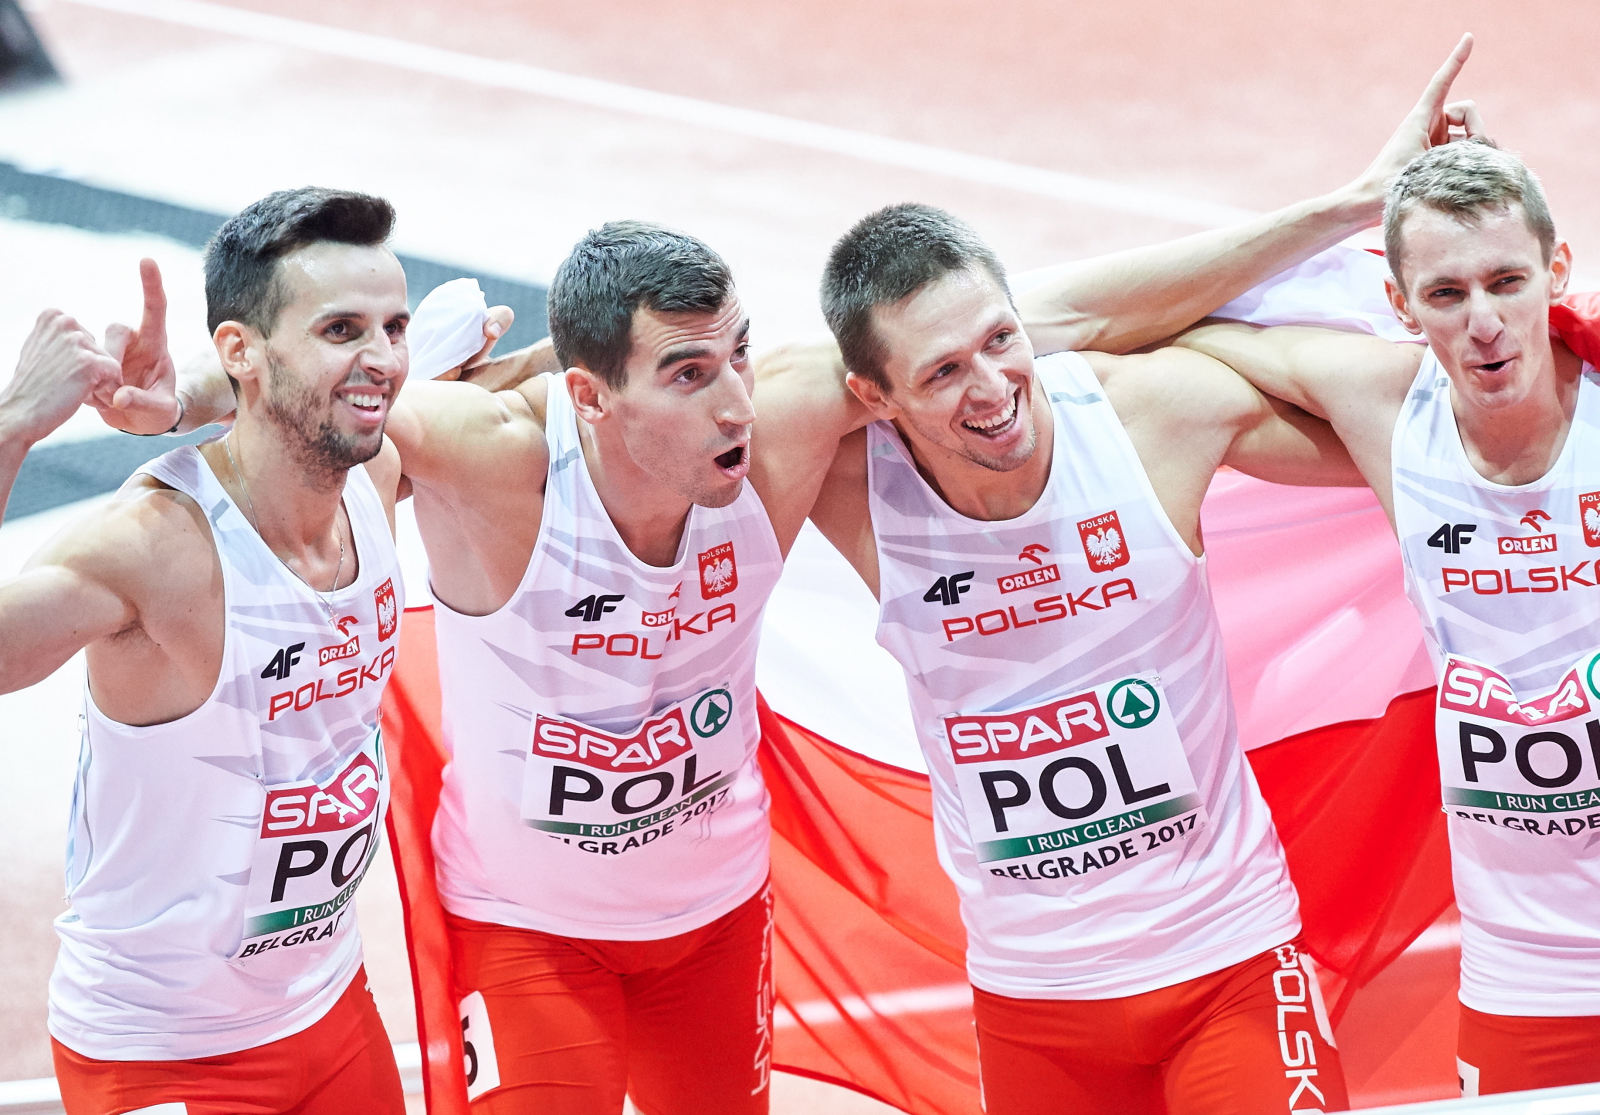 Polscy złoci medaliści na mecie biegu sztafetowego meżczyzn 4x400 m, podczas halowych mistrzostw Europy w lekkiej atletyce w Belgradzie, Serbia.